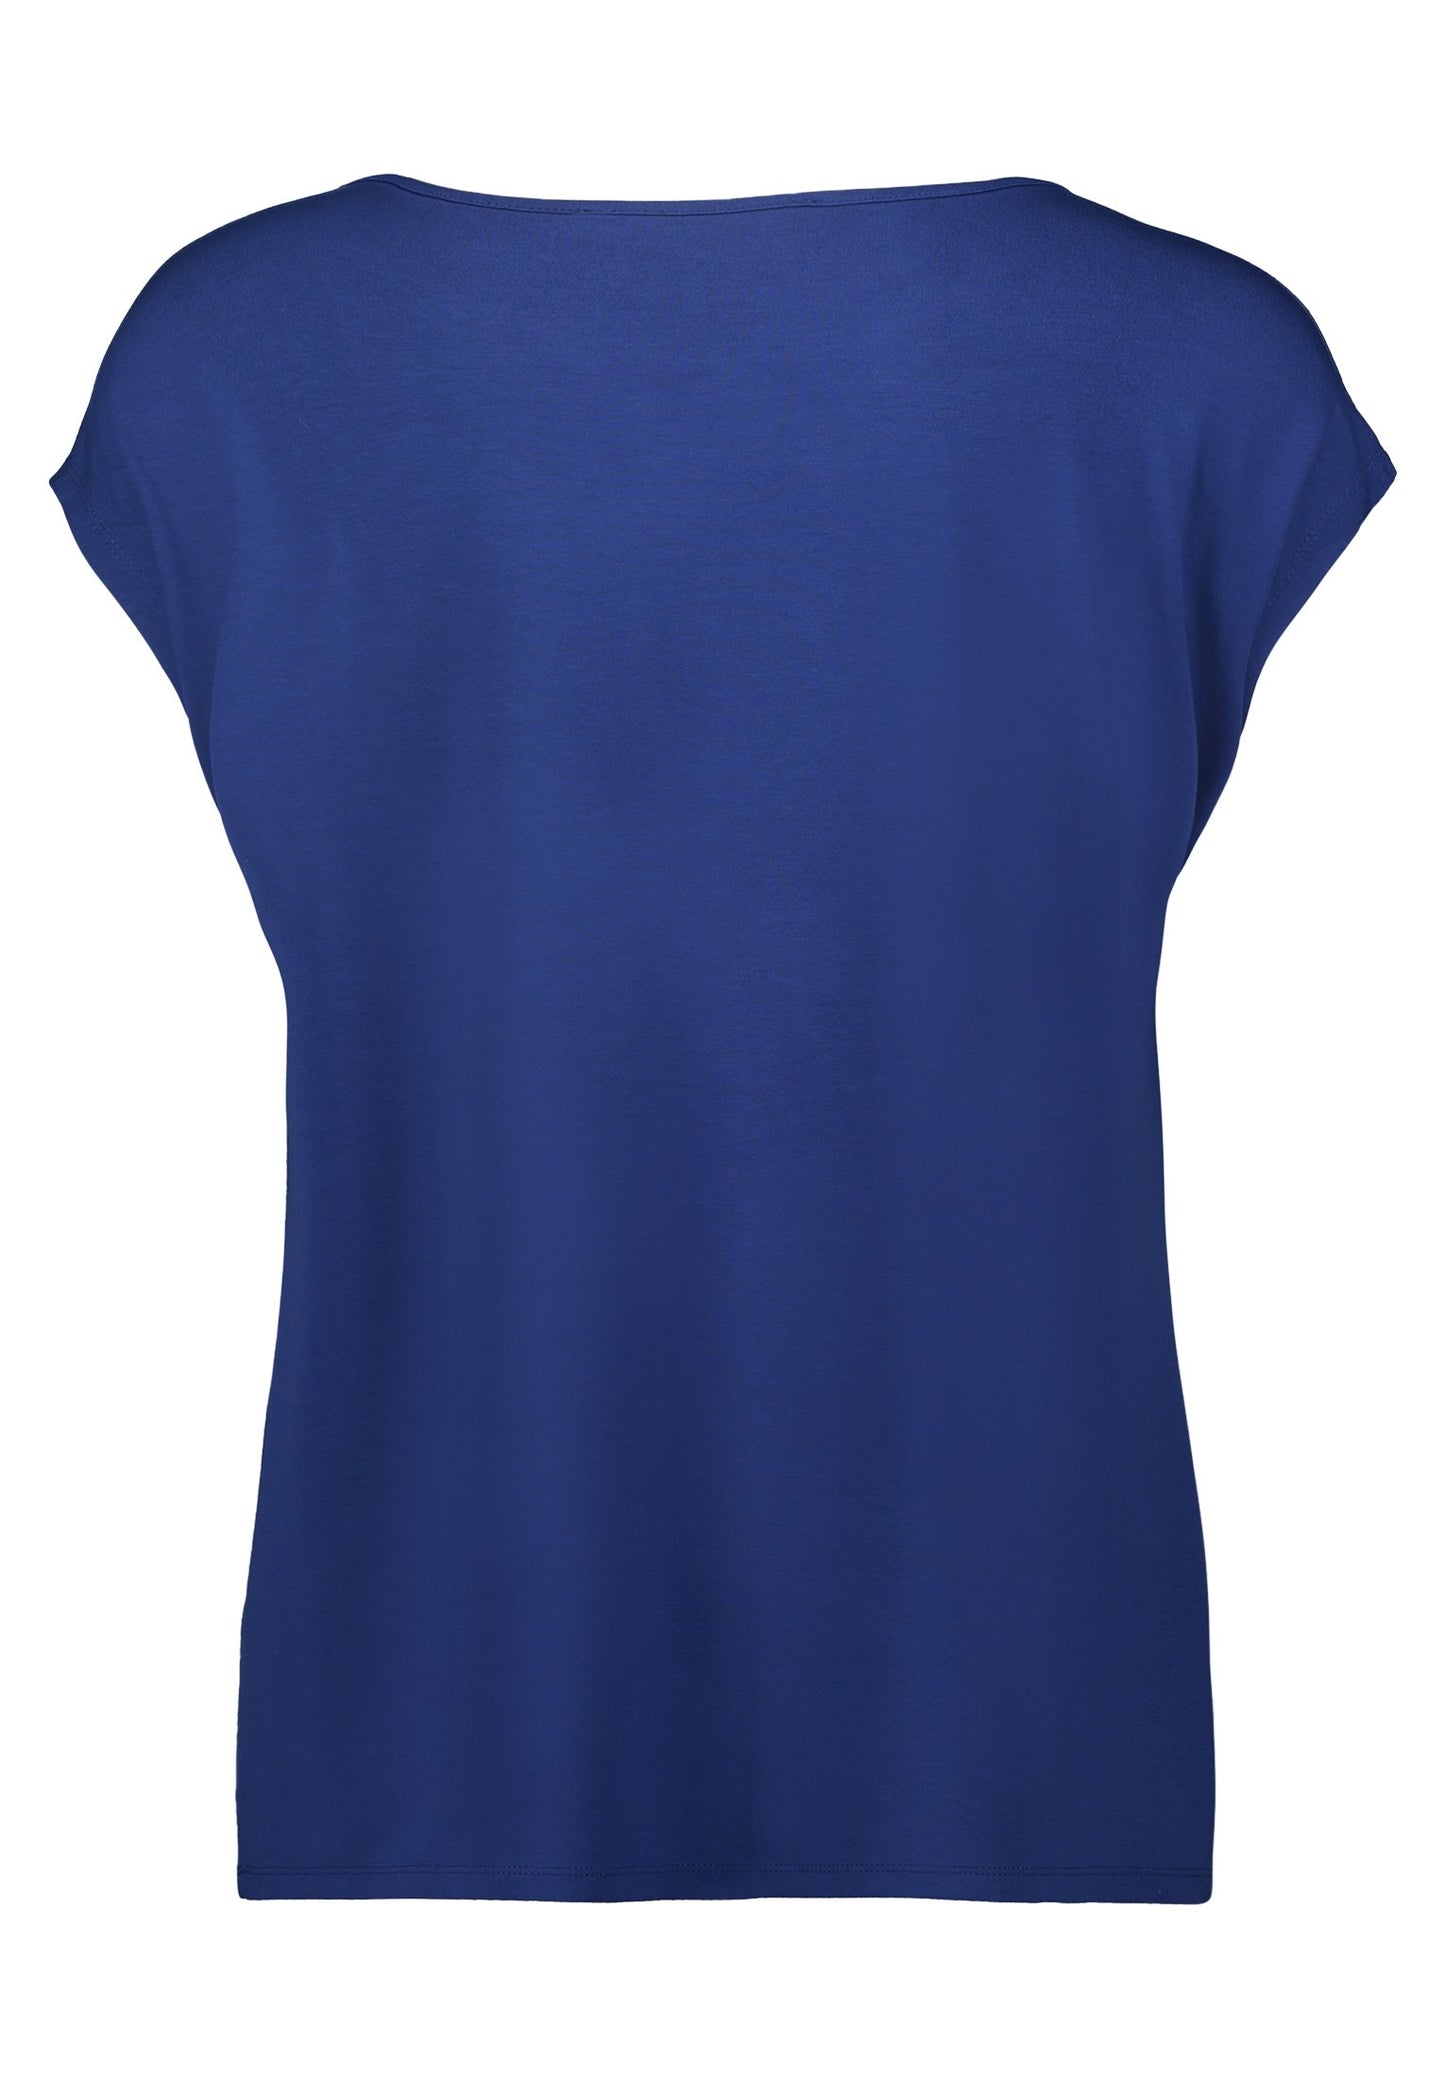 Casual-Shirt (Dark Blue/blue)